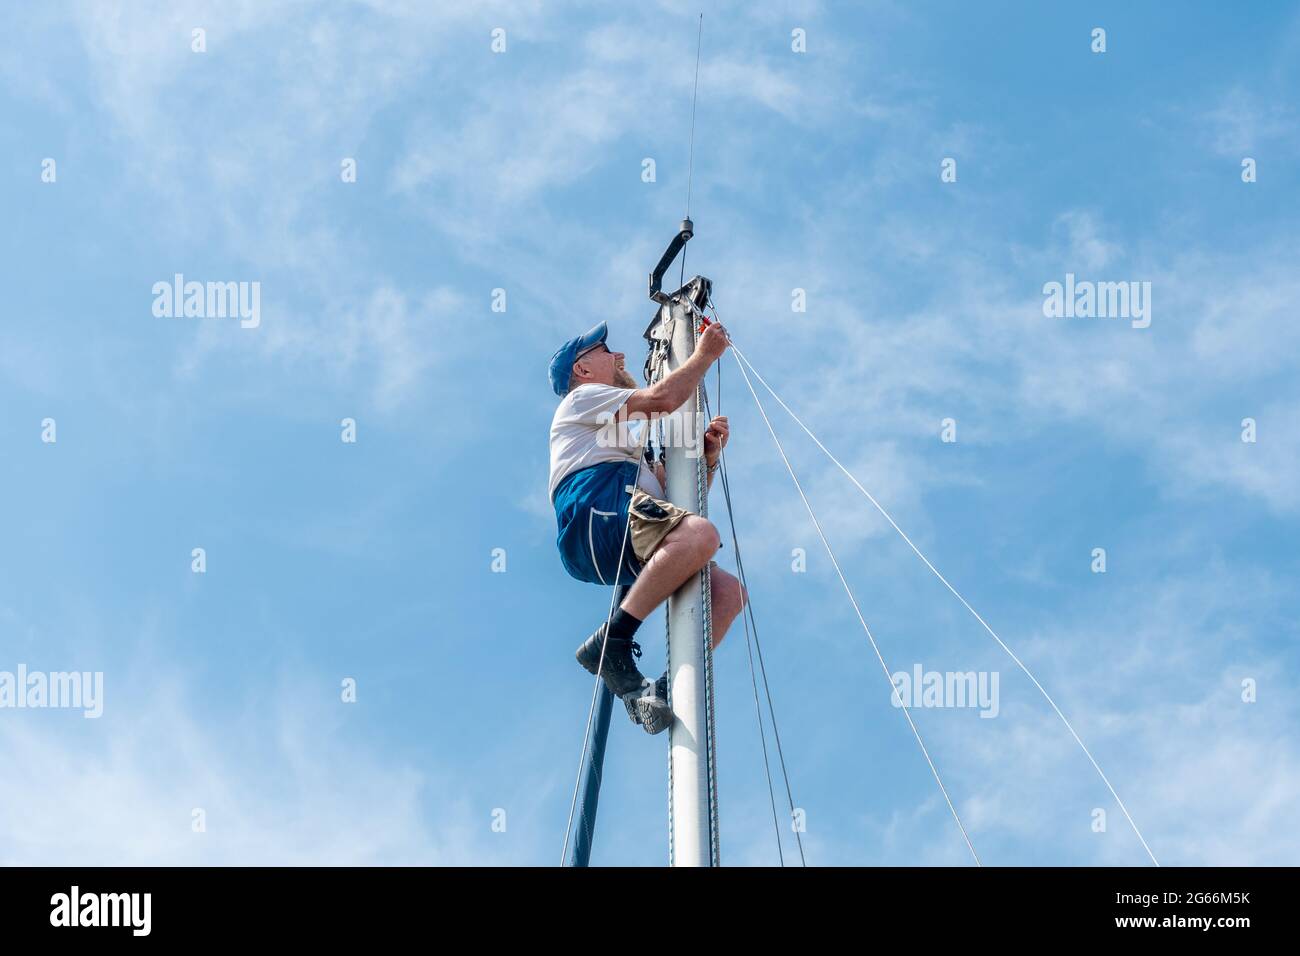 Homme dans un harnais de sécurité en haut du mât d'un yacht ou d'un voilier effectuant des travaux d'entretien sur le gréage, Royaume-Uni Banque D'Images